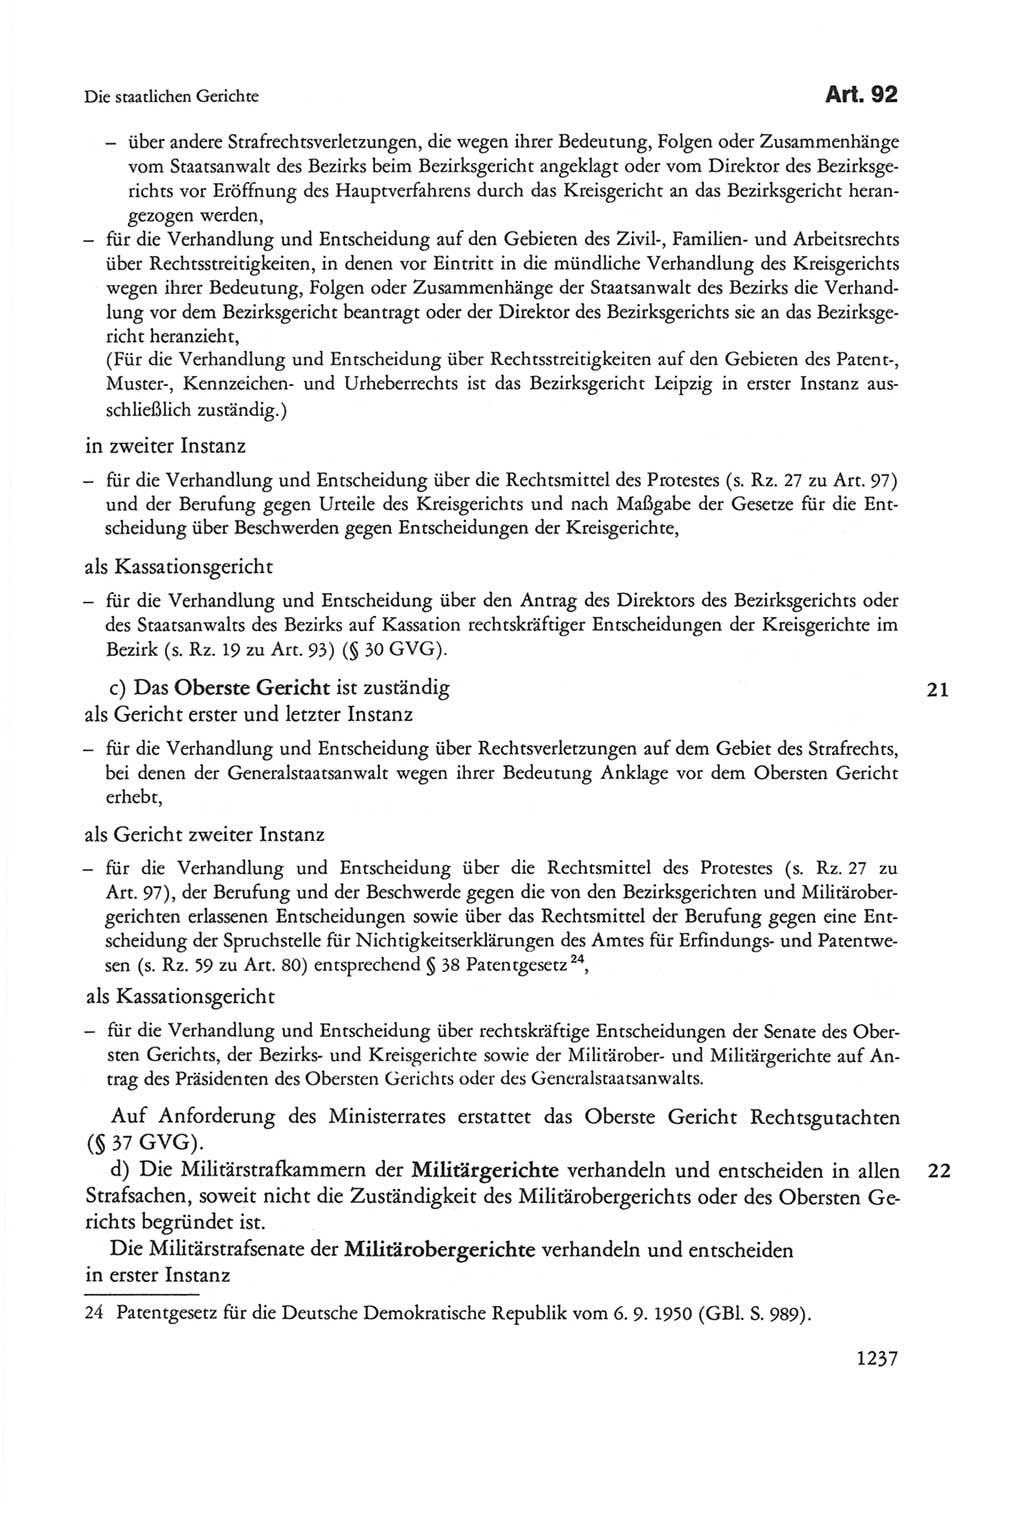 Die sozialistische Verfassung der Deutschen Demokratischen Republik (DDR), Kommentar mit einem Nachtrag 1997, Seite 1237 (Soz. Verf. DDR Komm. Nachtr. 1997, S. 1237)